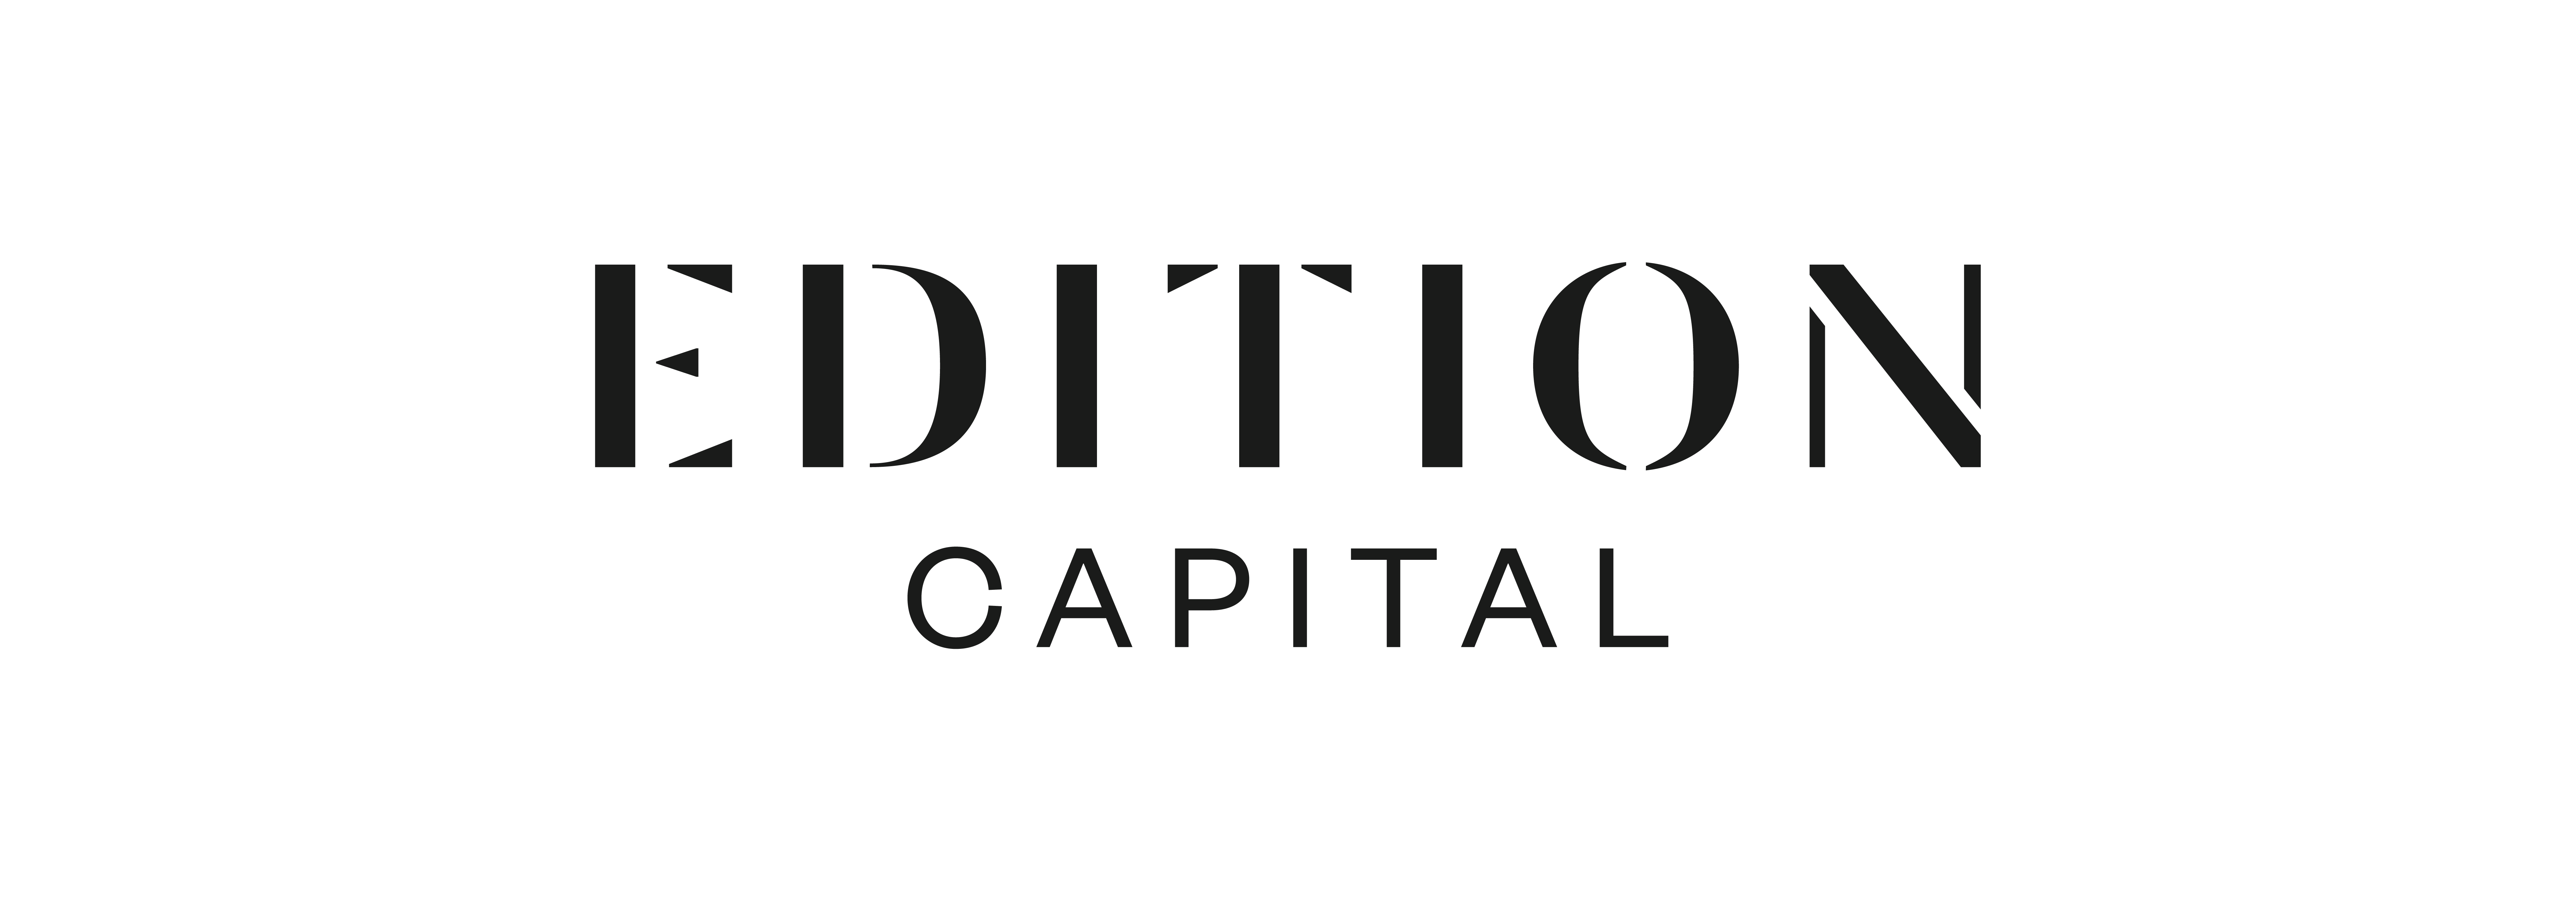 Edition Capital